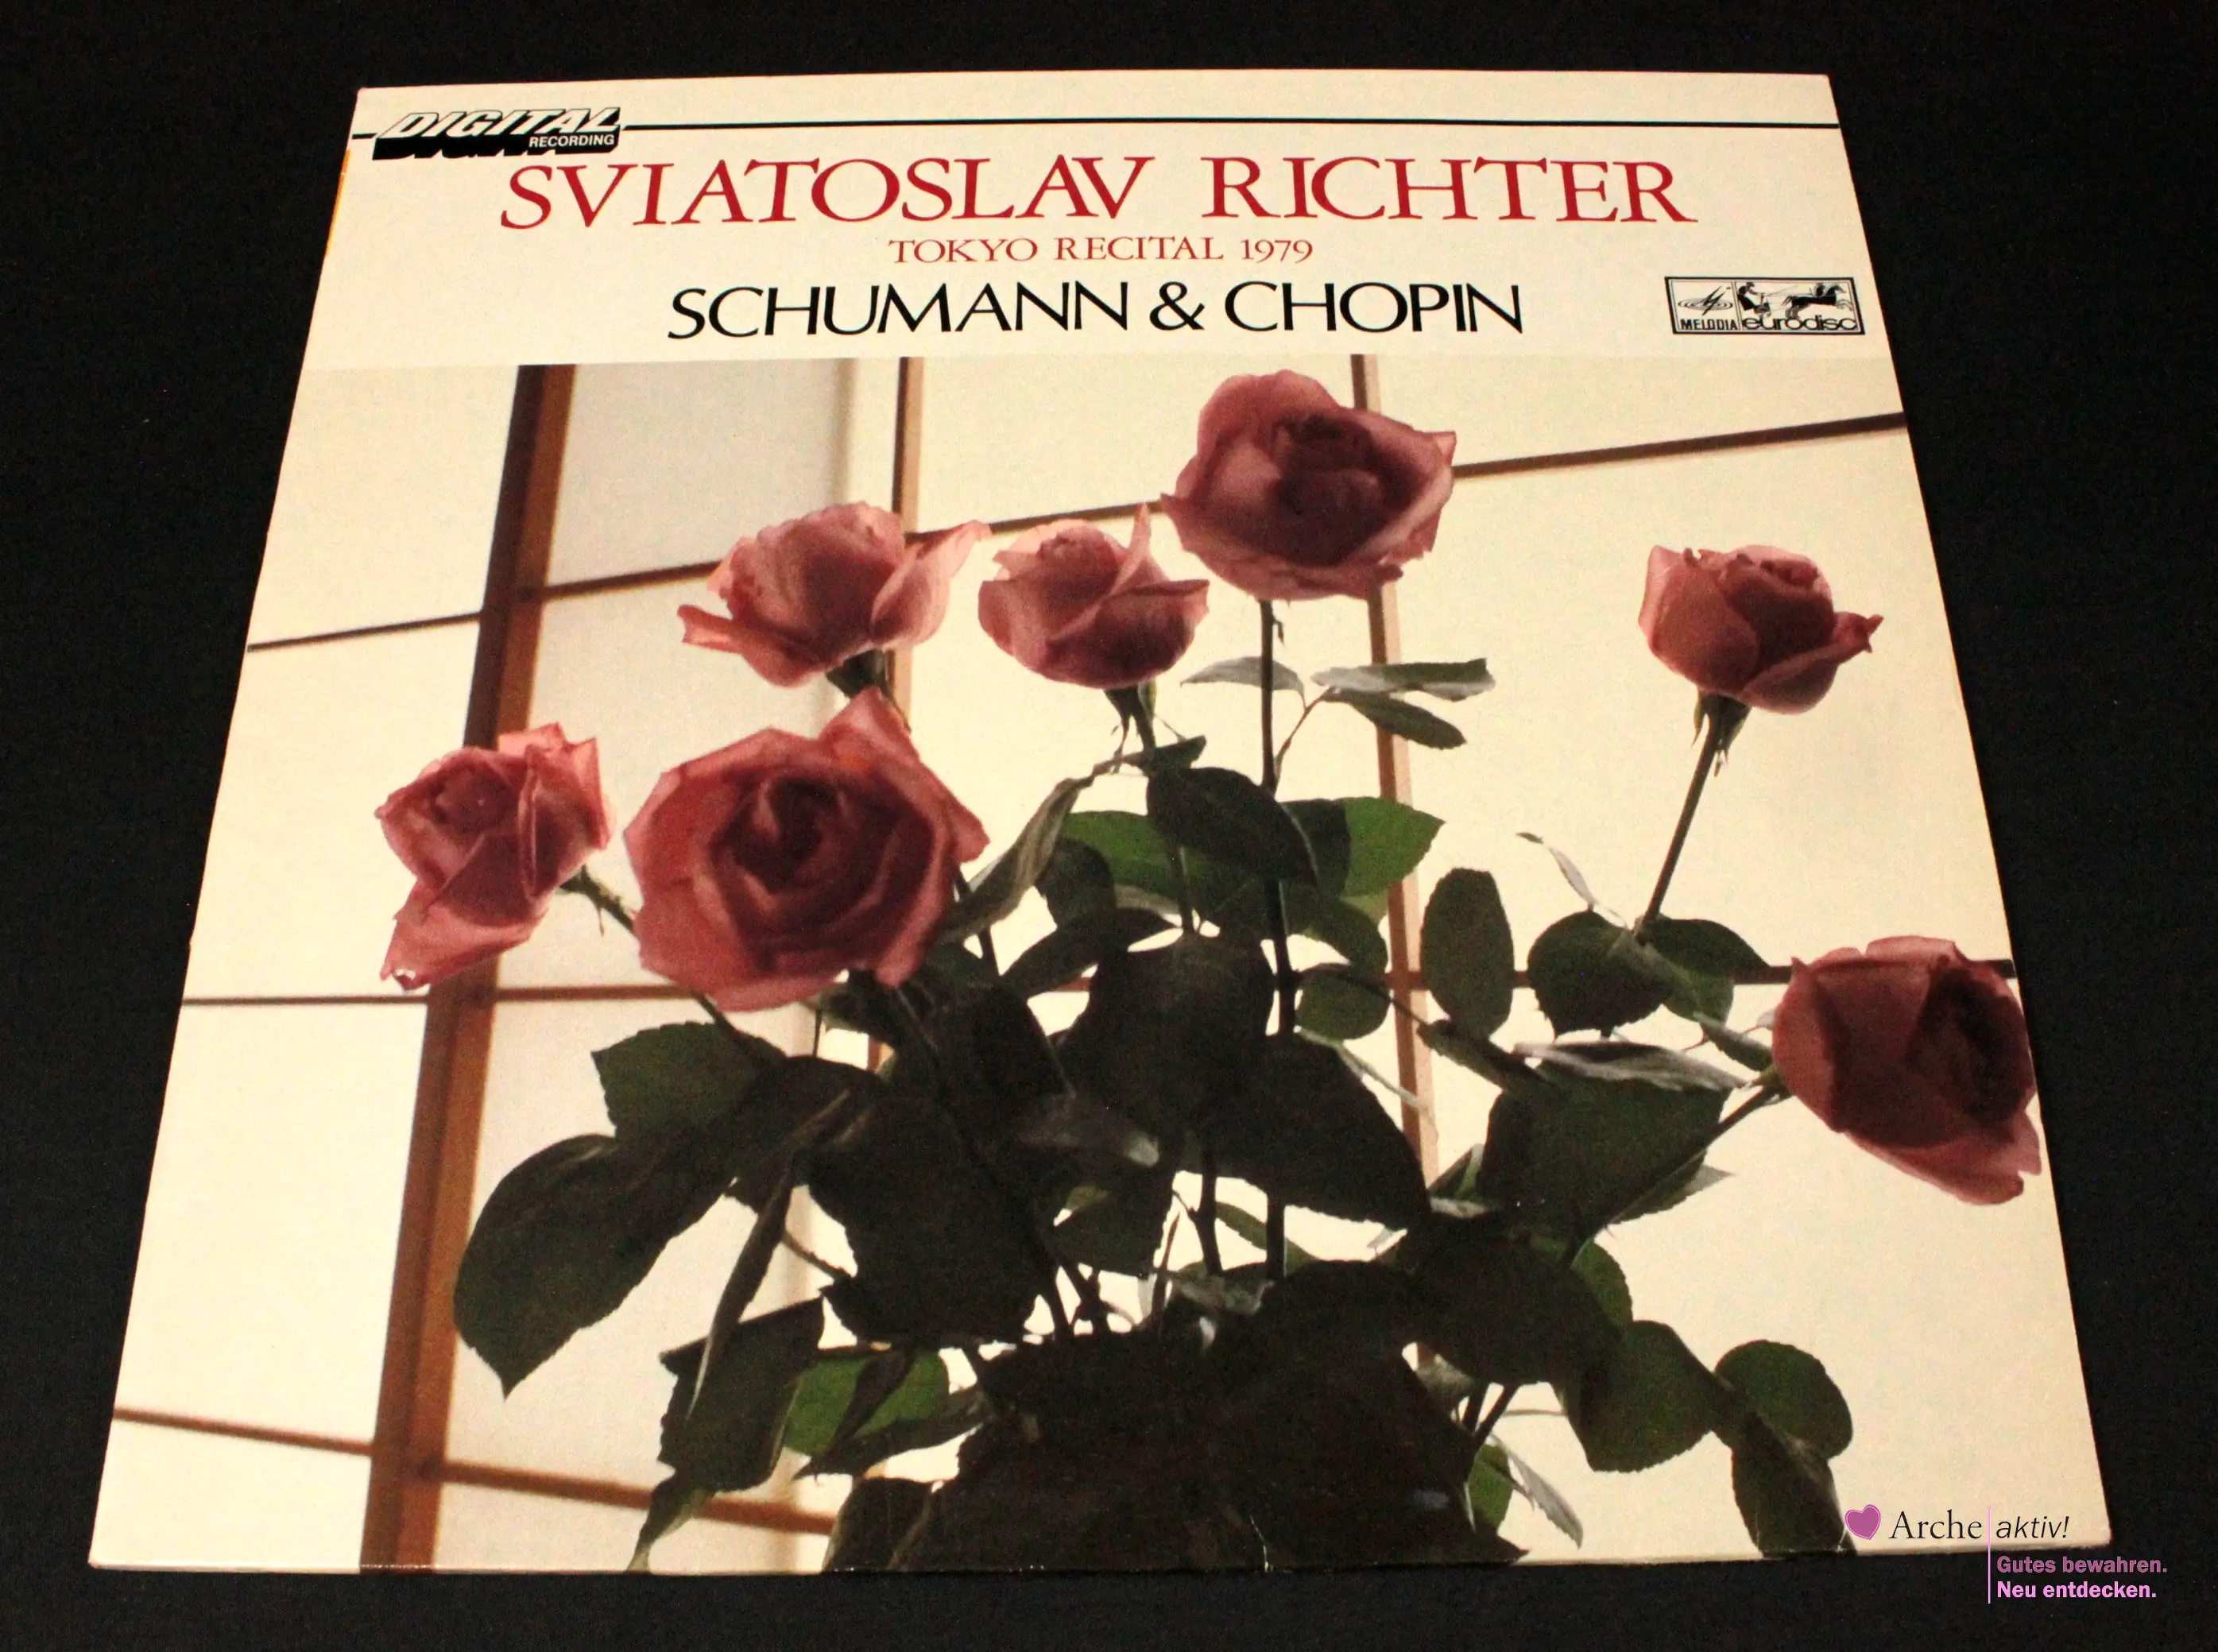 Sviatoslav Richter - Schumann & Chopin - Tokyo Recital 1979 (Vinyl) LP, gebraucht